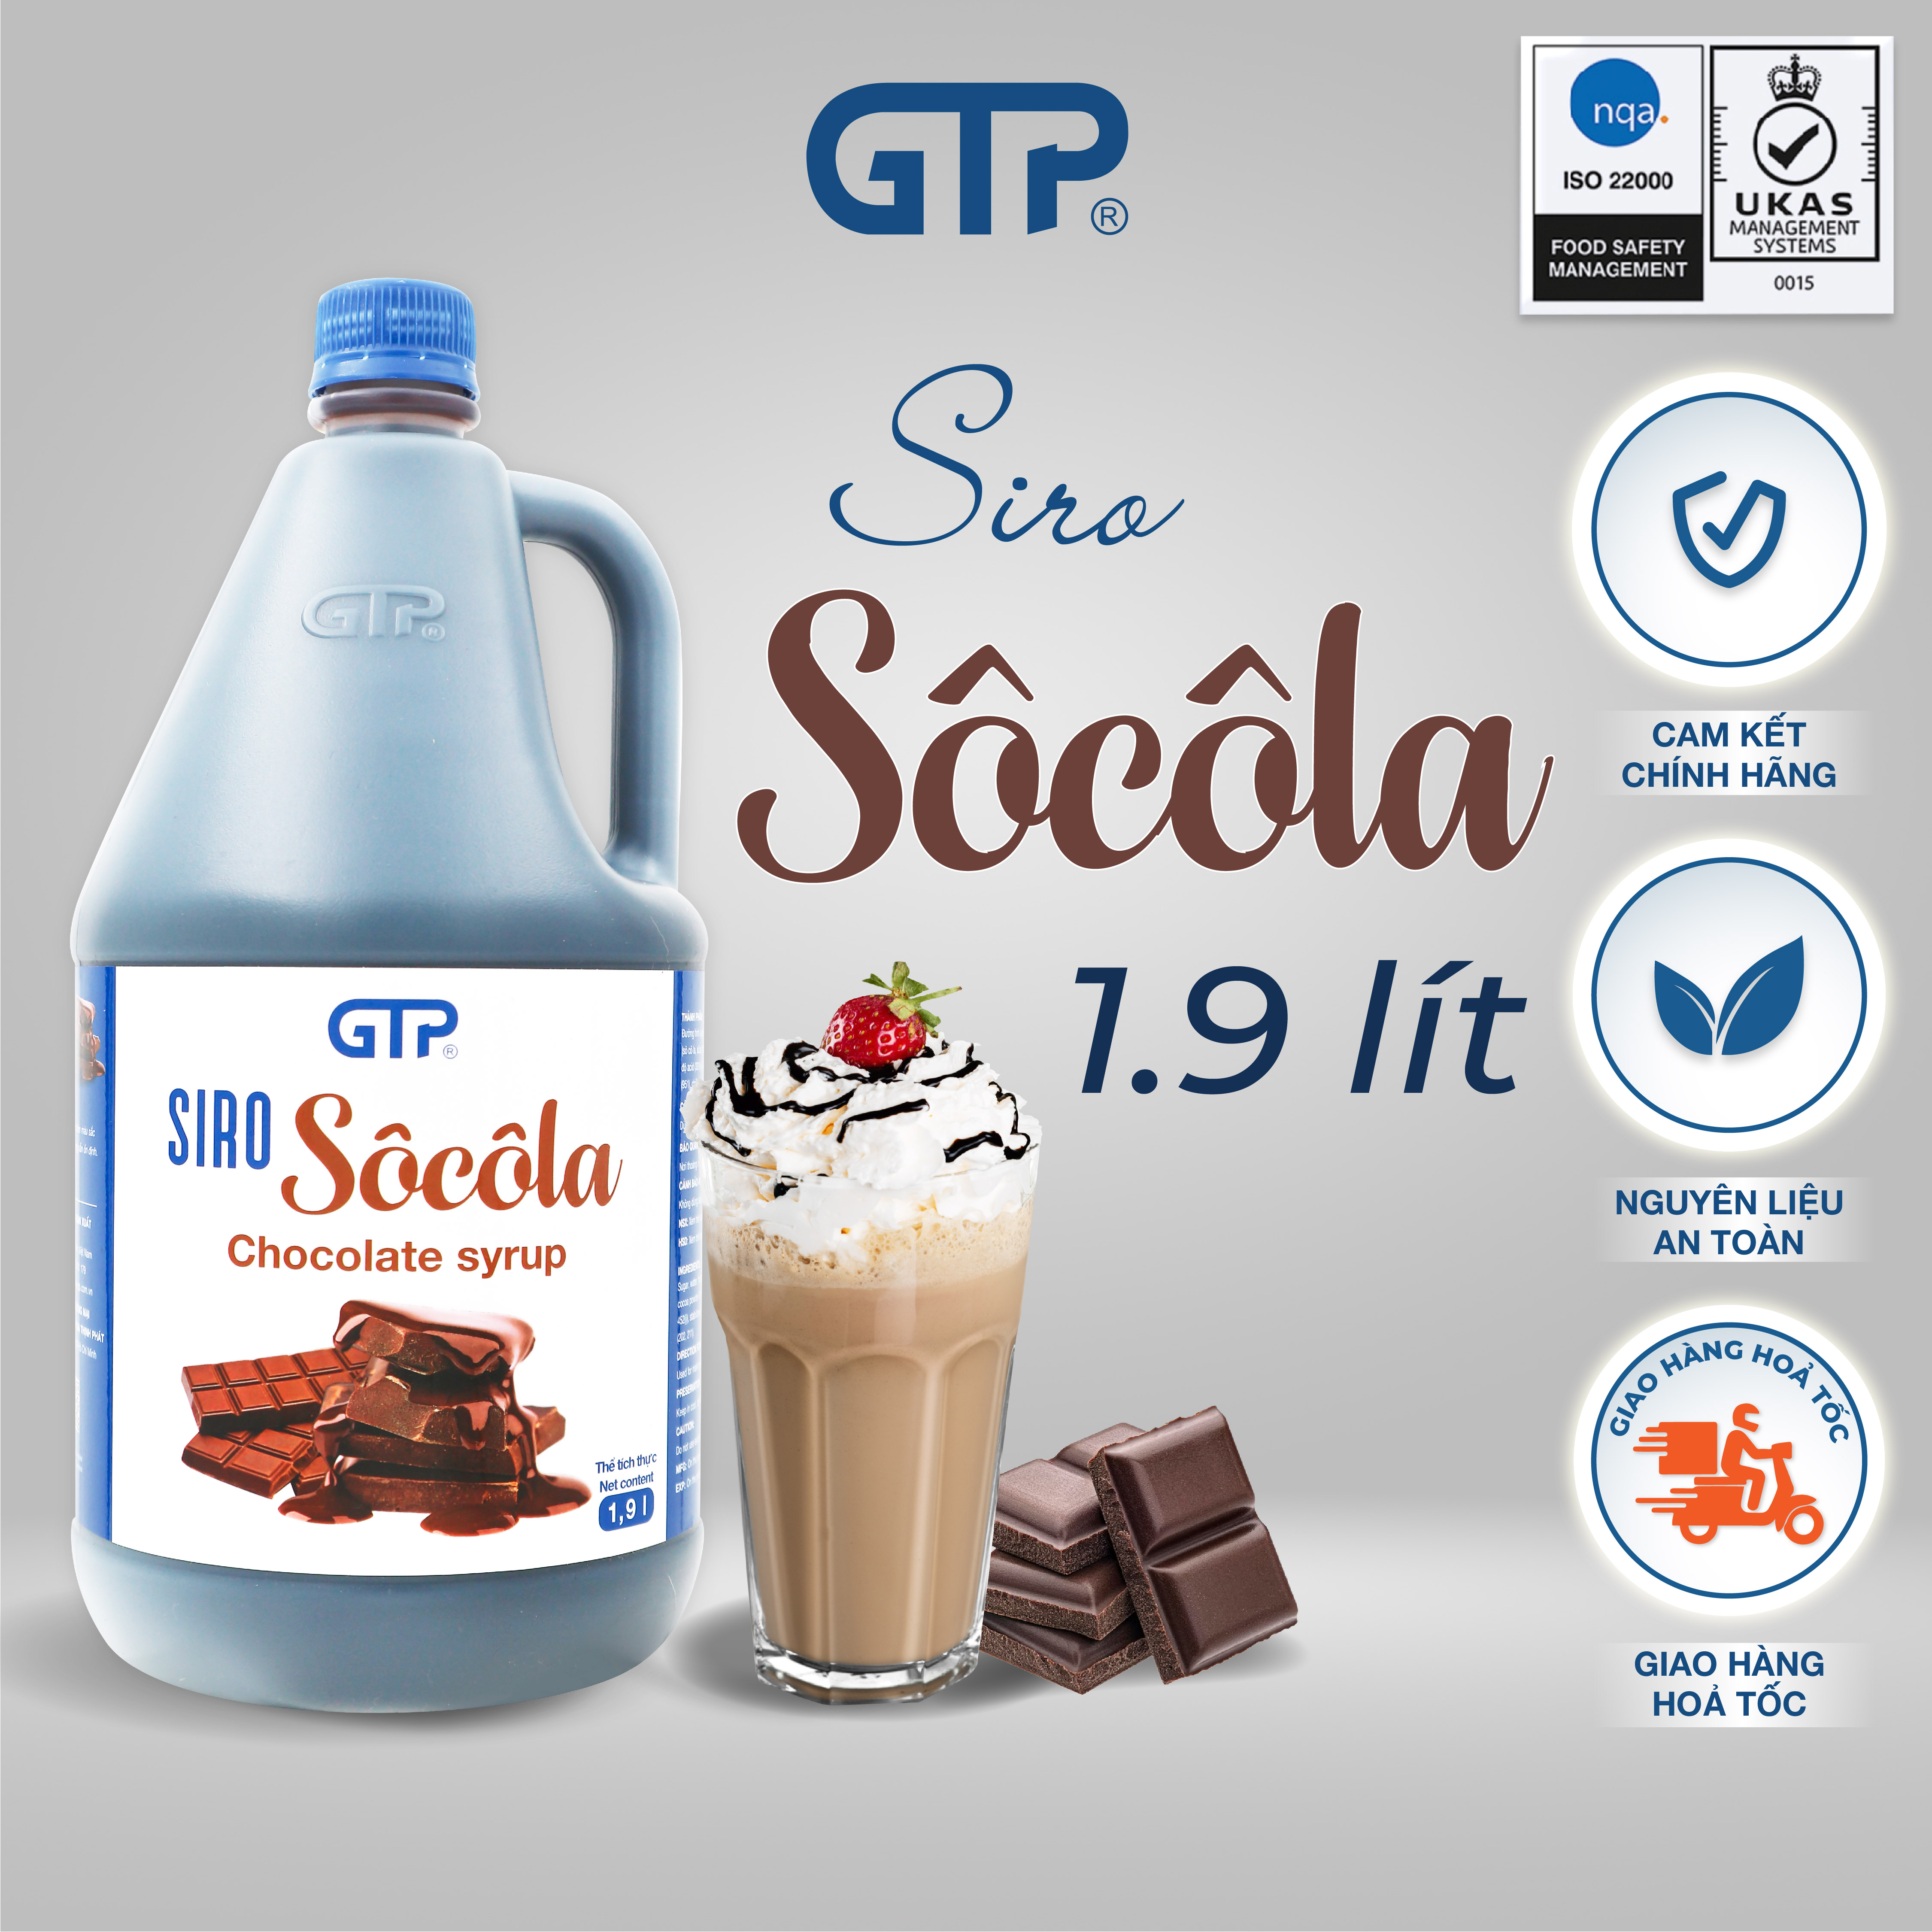 Siro Chocolate GTP - Chuyên dùng pha chế: Trà sữa, Trà trái cây, Cocktail, Mocktail…